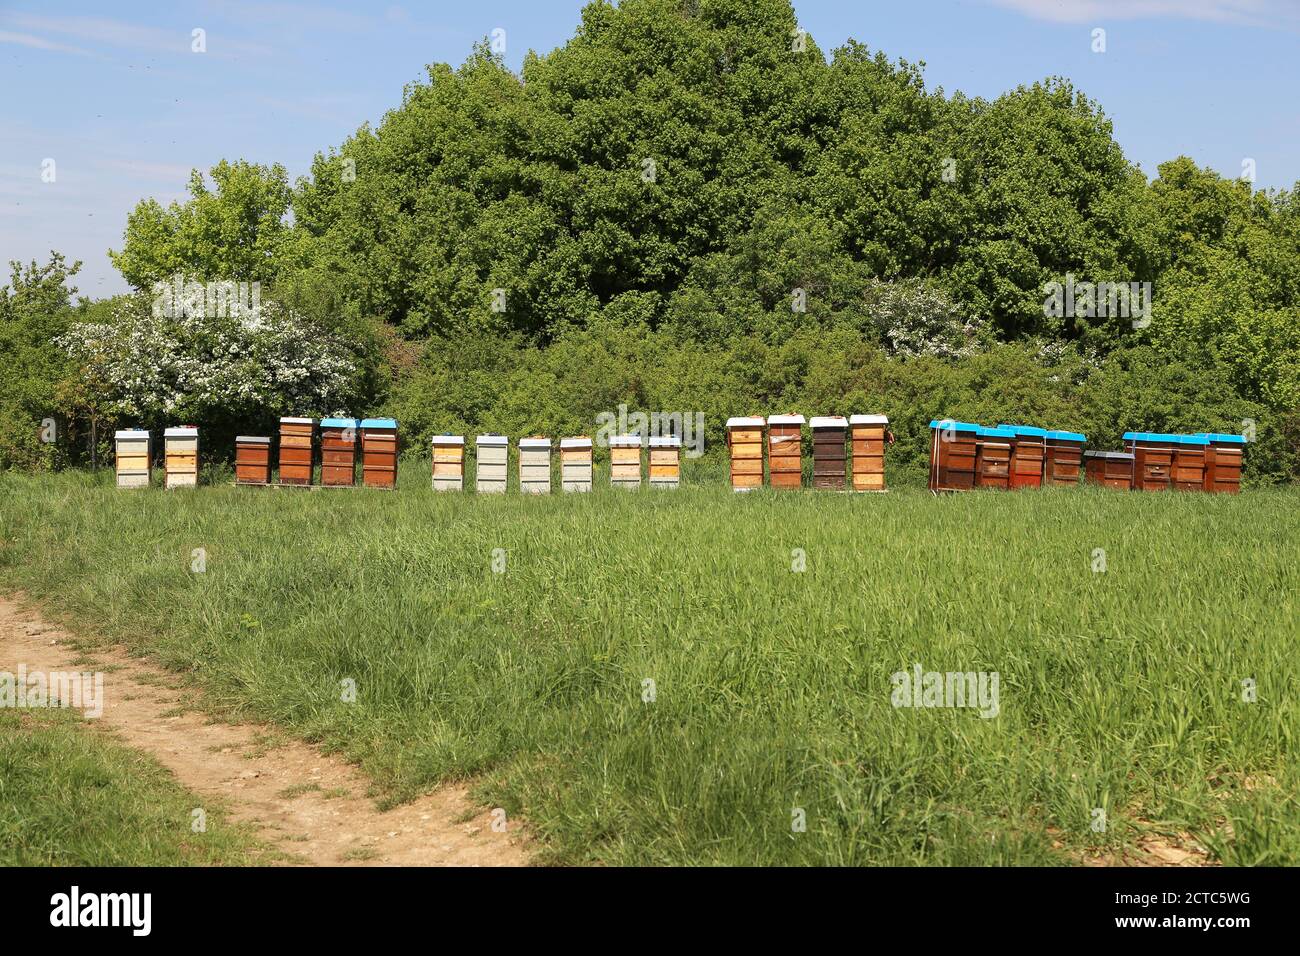 Gros plan d'apiaries dans le champ avec une végétation luxuriante Banque D'Images